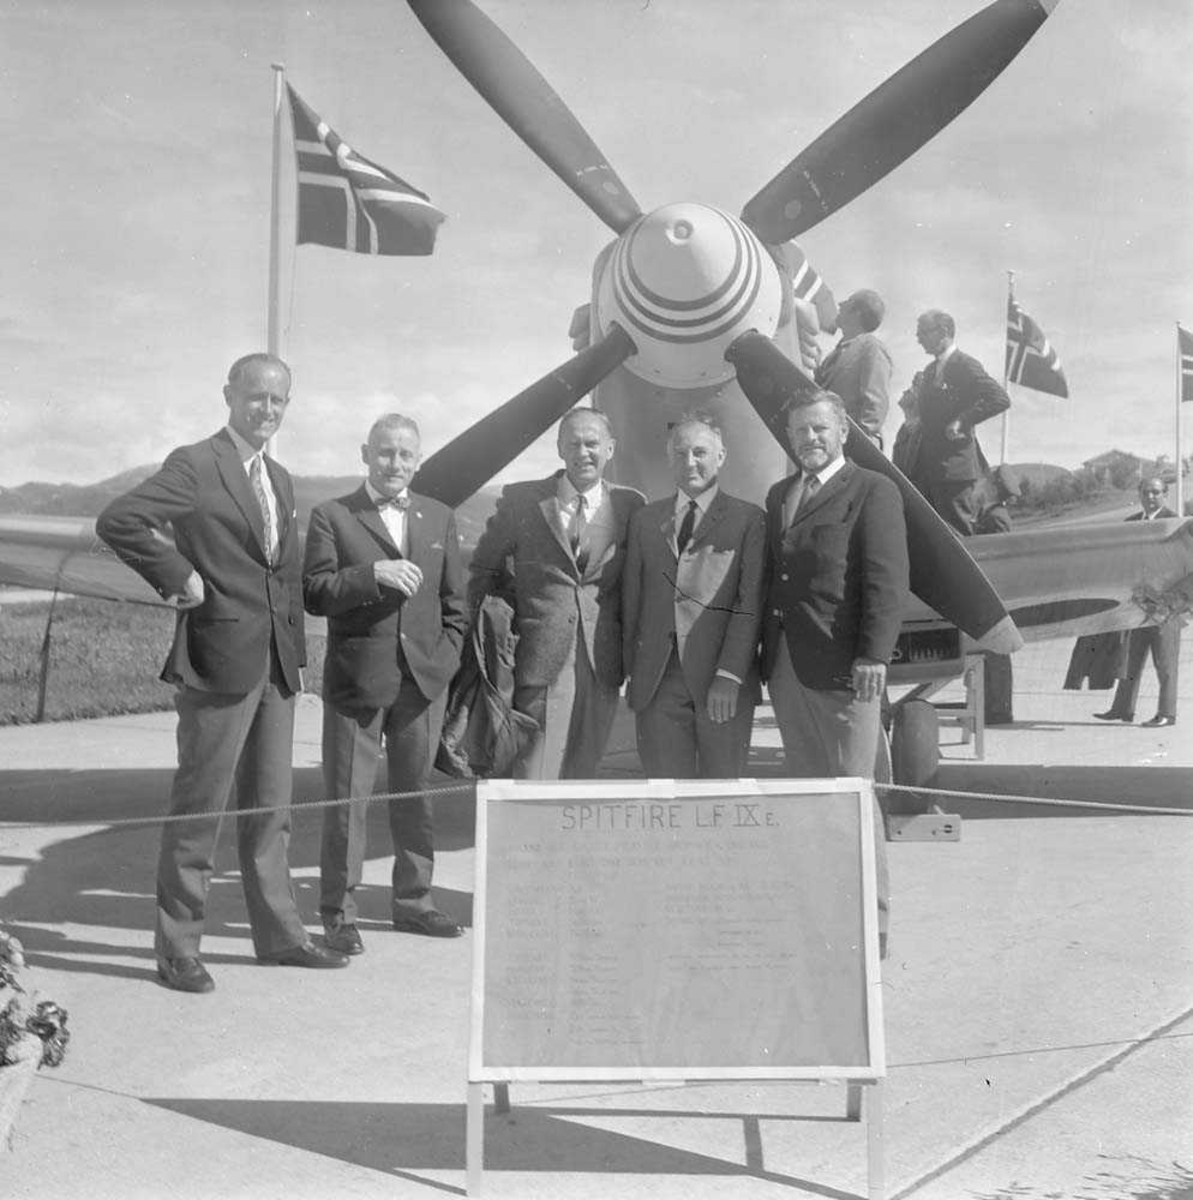 331 skvadron, Bodø flystasjon, feirer 30 års Jubileum. Her sees sannsynligvis noen av veteranene som fly Spitfire (bak) under krigen.